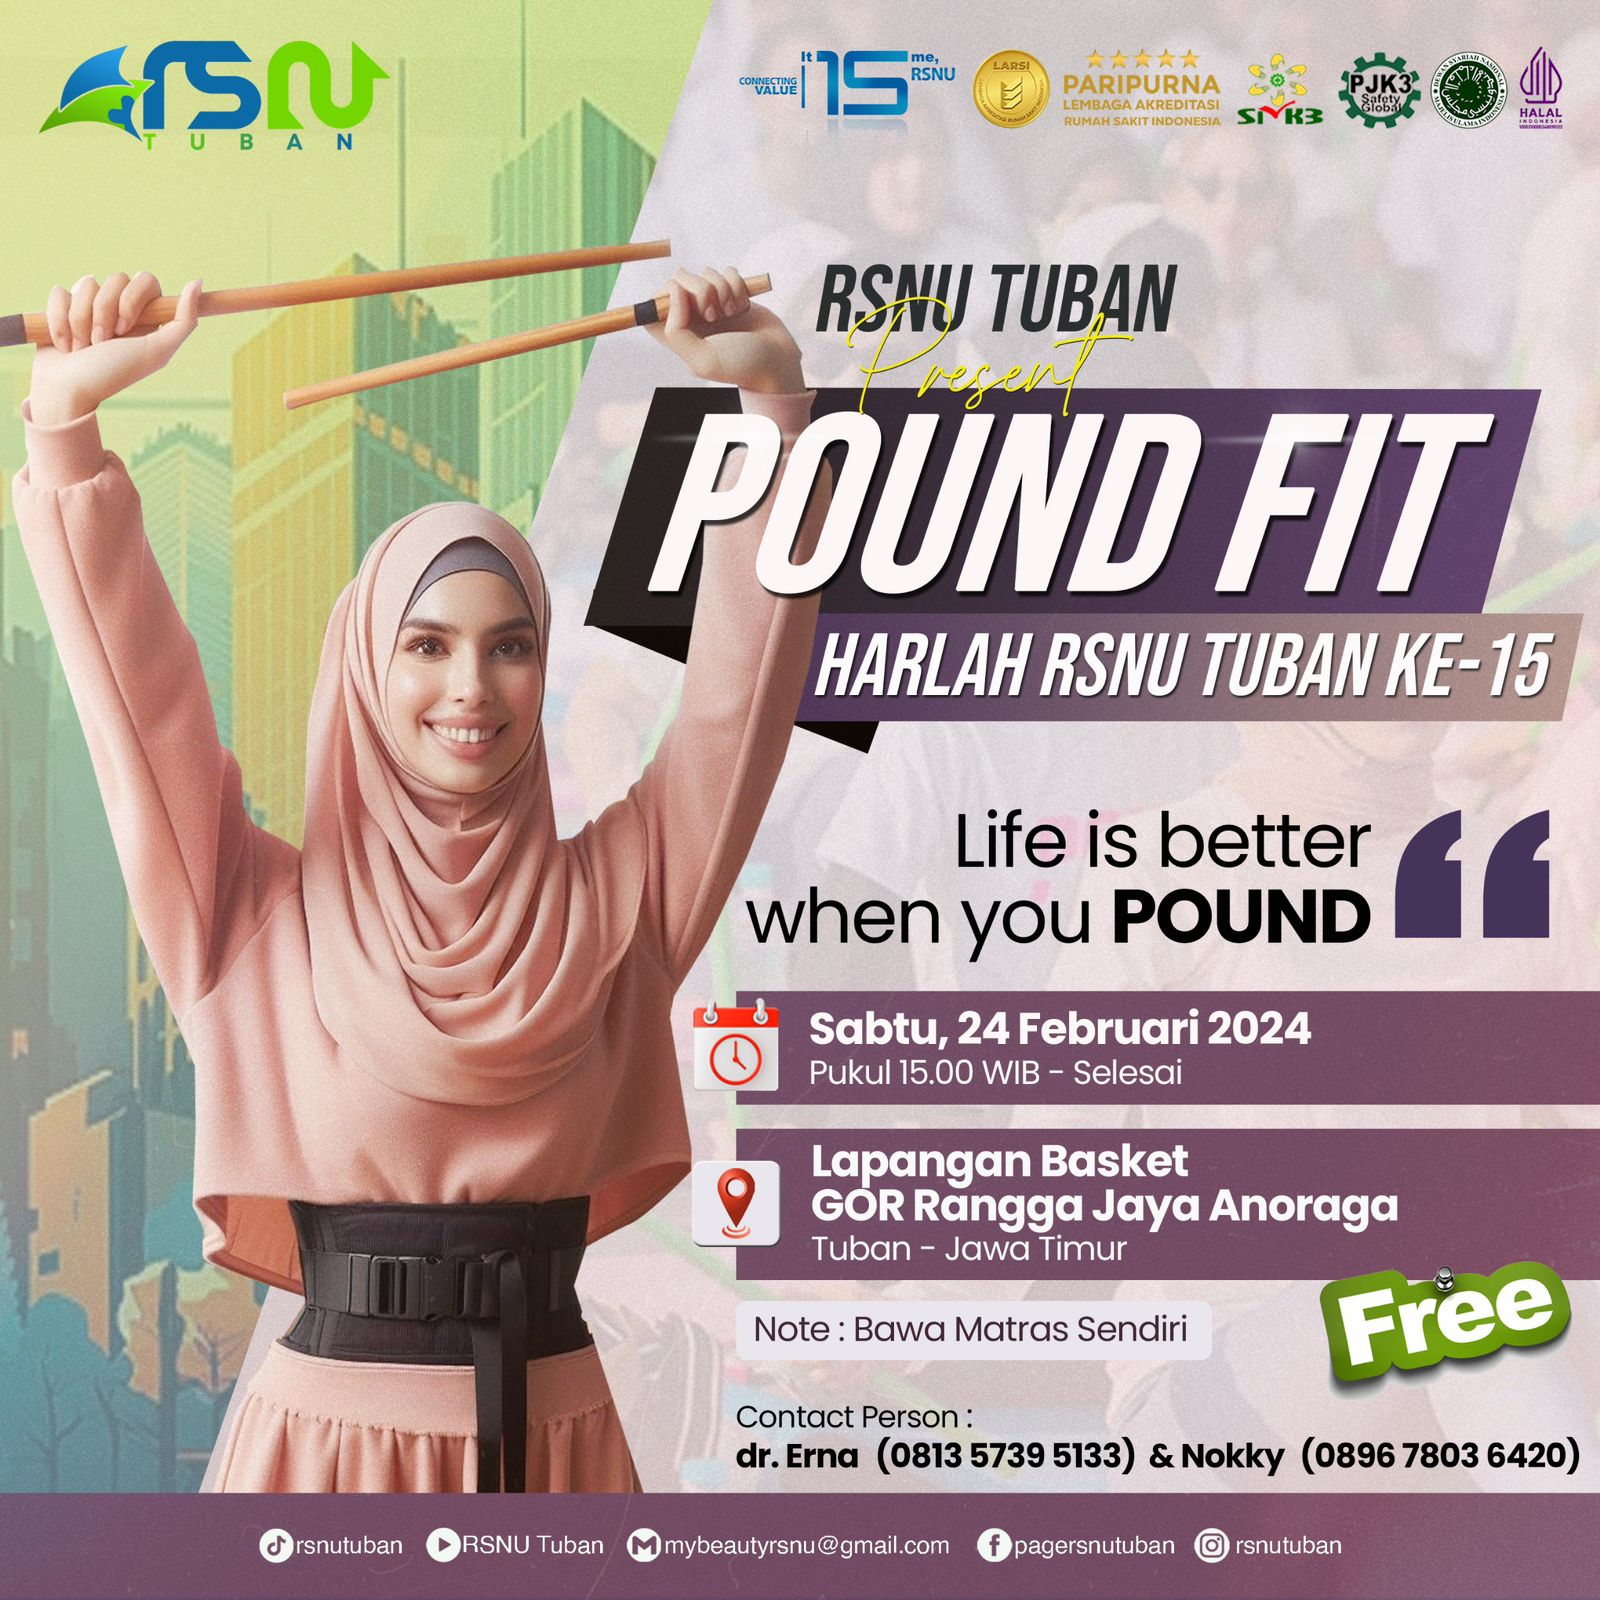 RSNU Tuban - Flyer Pound Fit